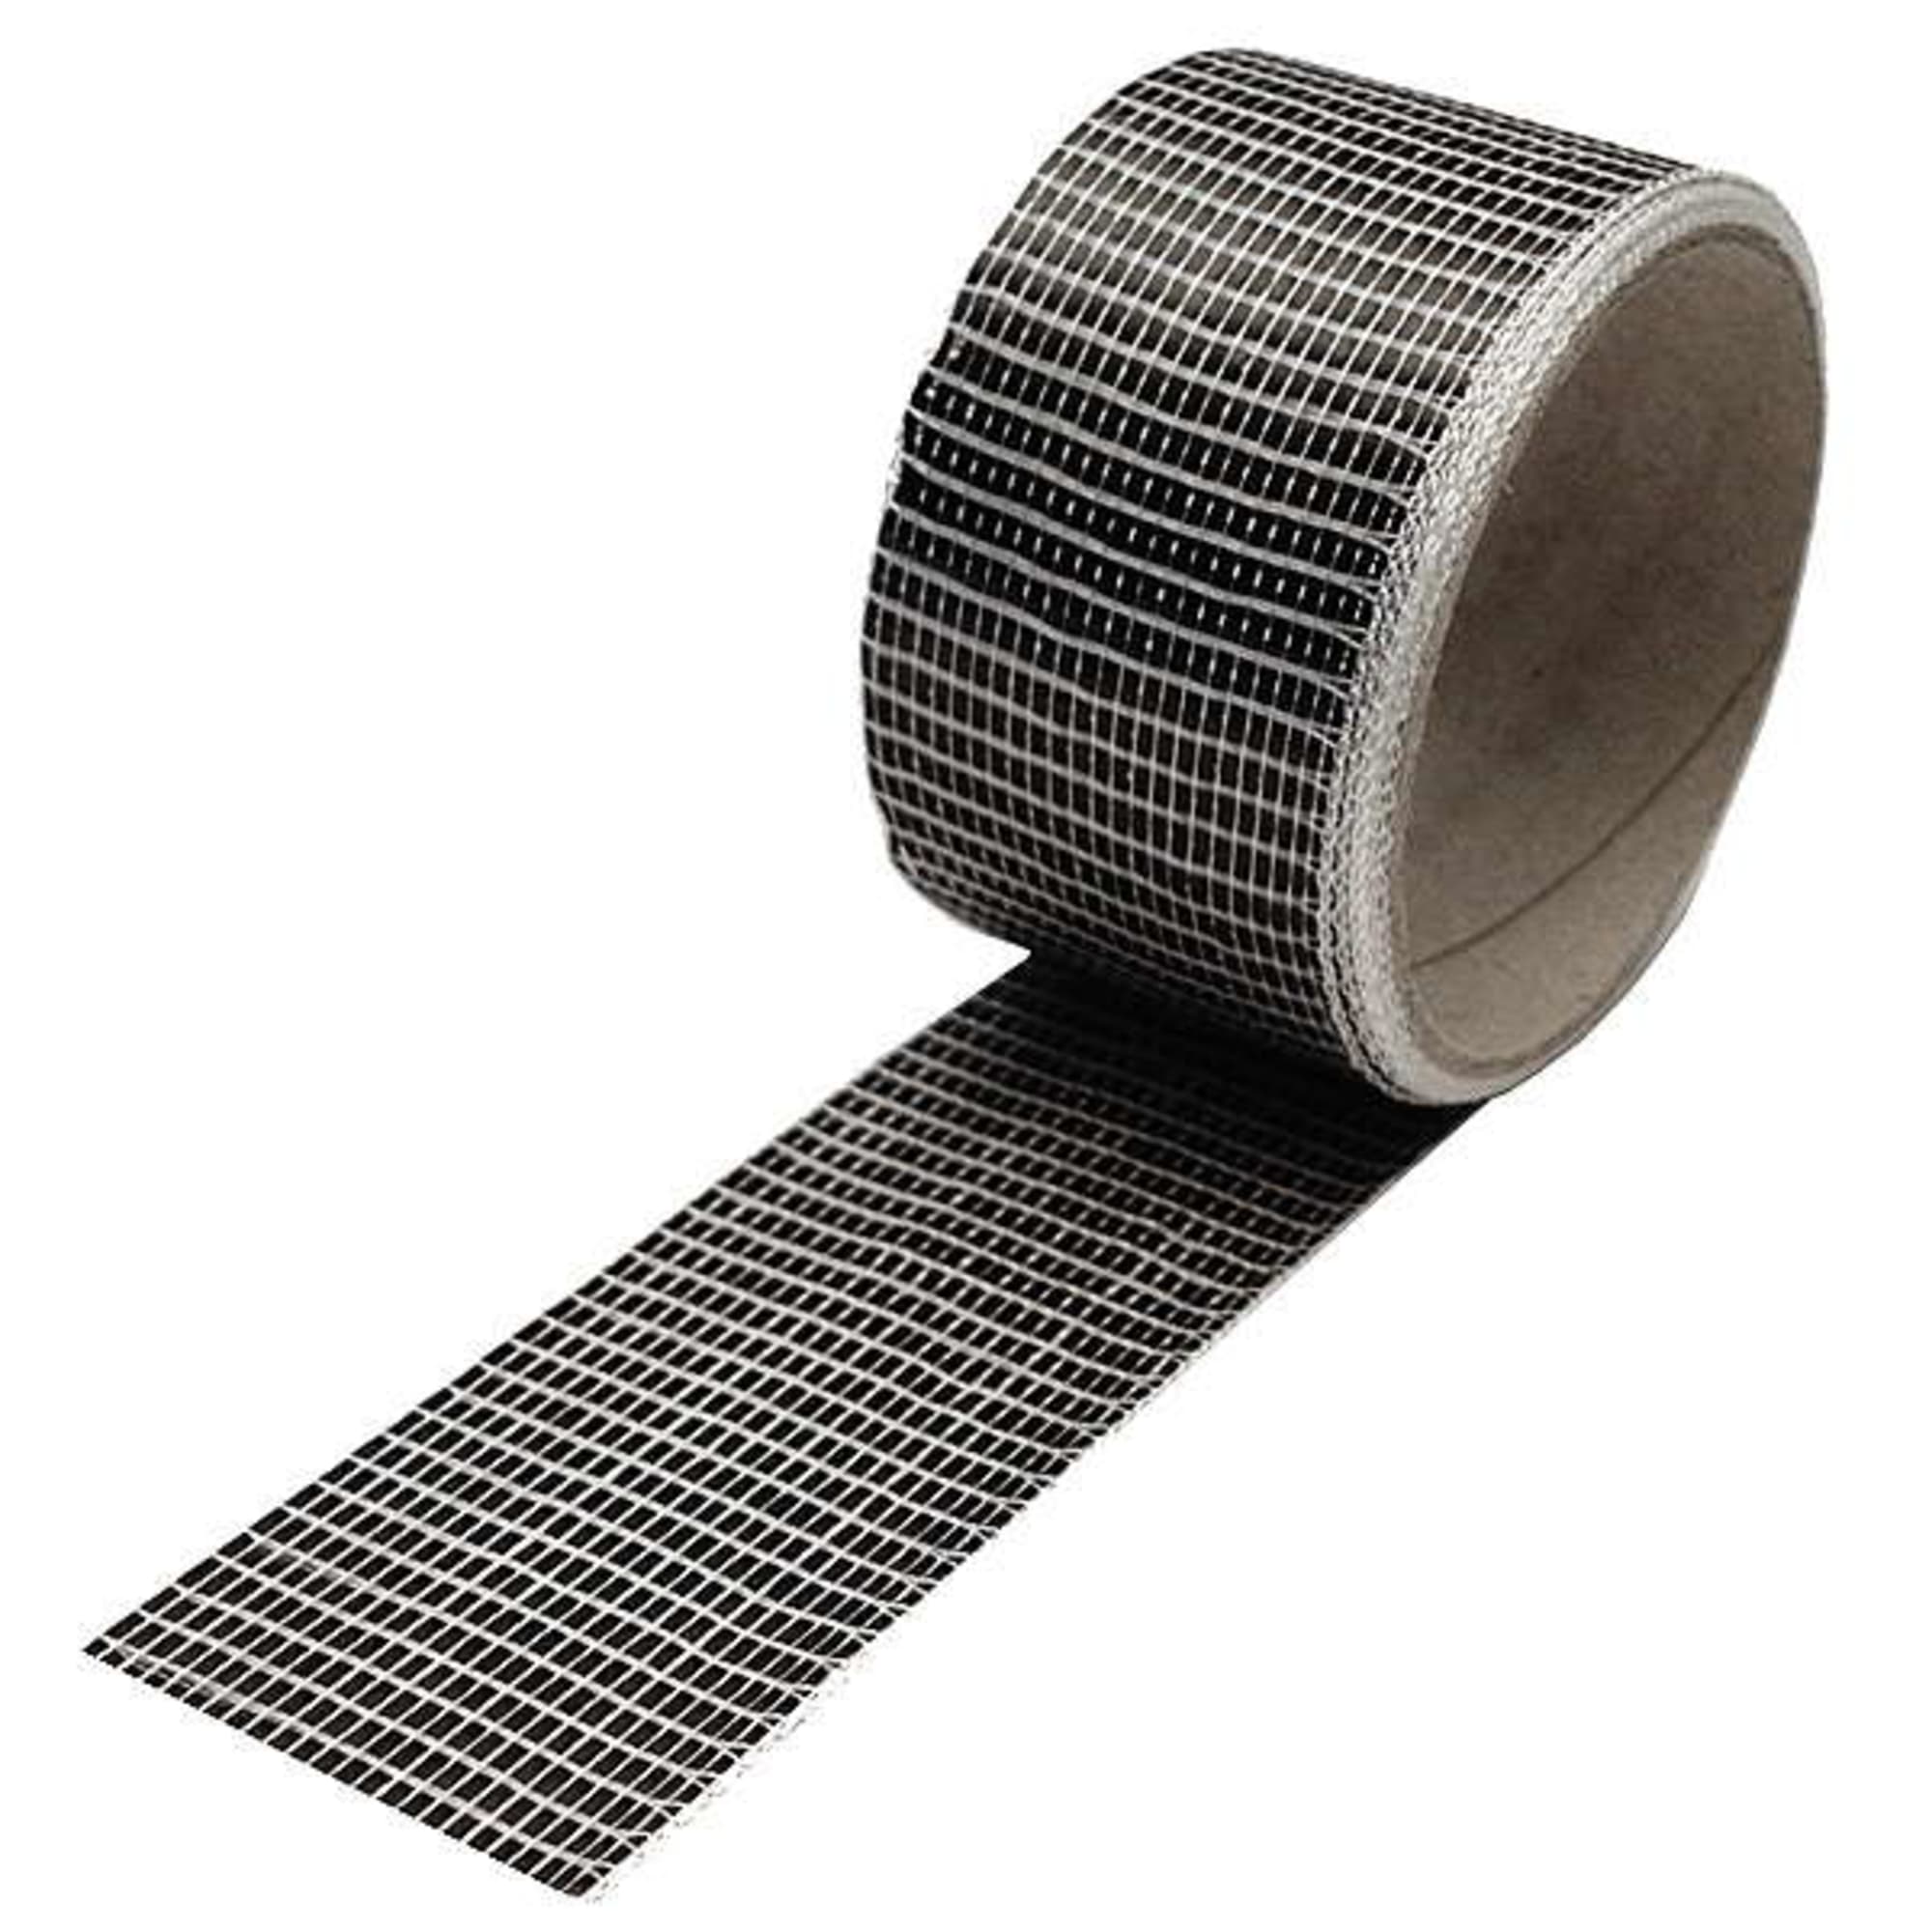 Carbon fibre tape 125 g/m² (unidirectional) 50 mm